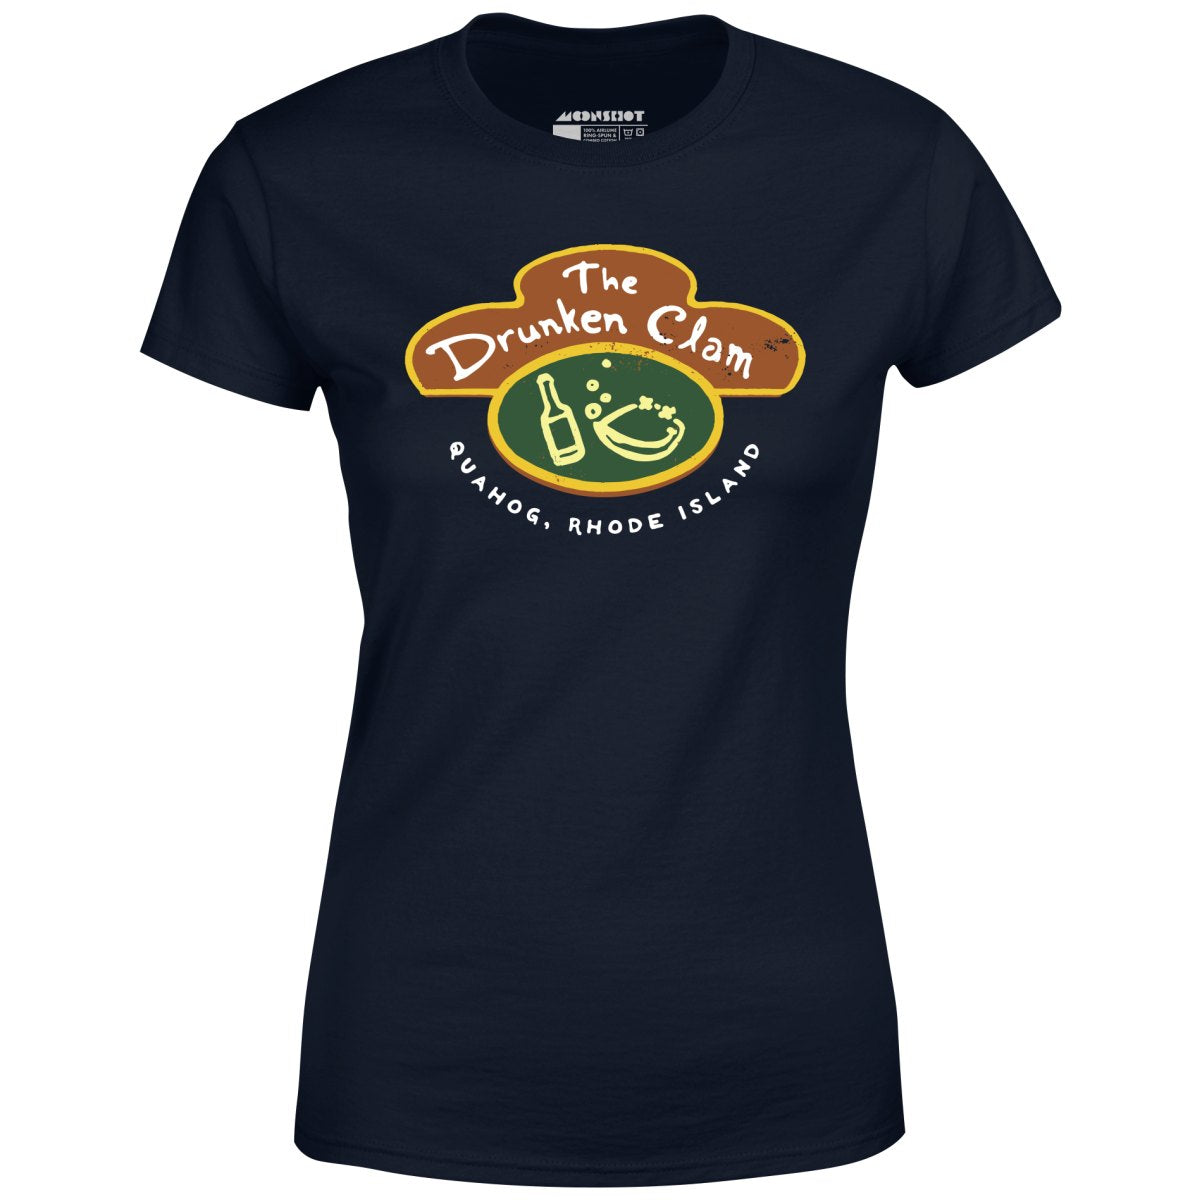 The Drunken Clam - Quahog, Rhode Island - Women's T-Shirt